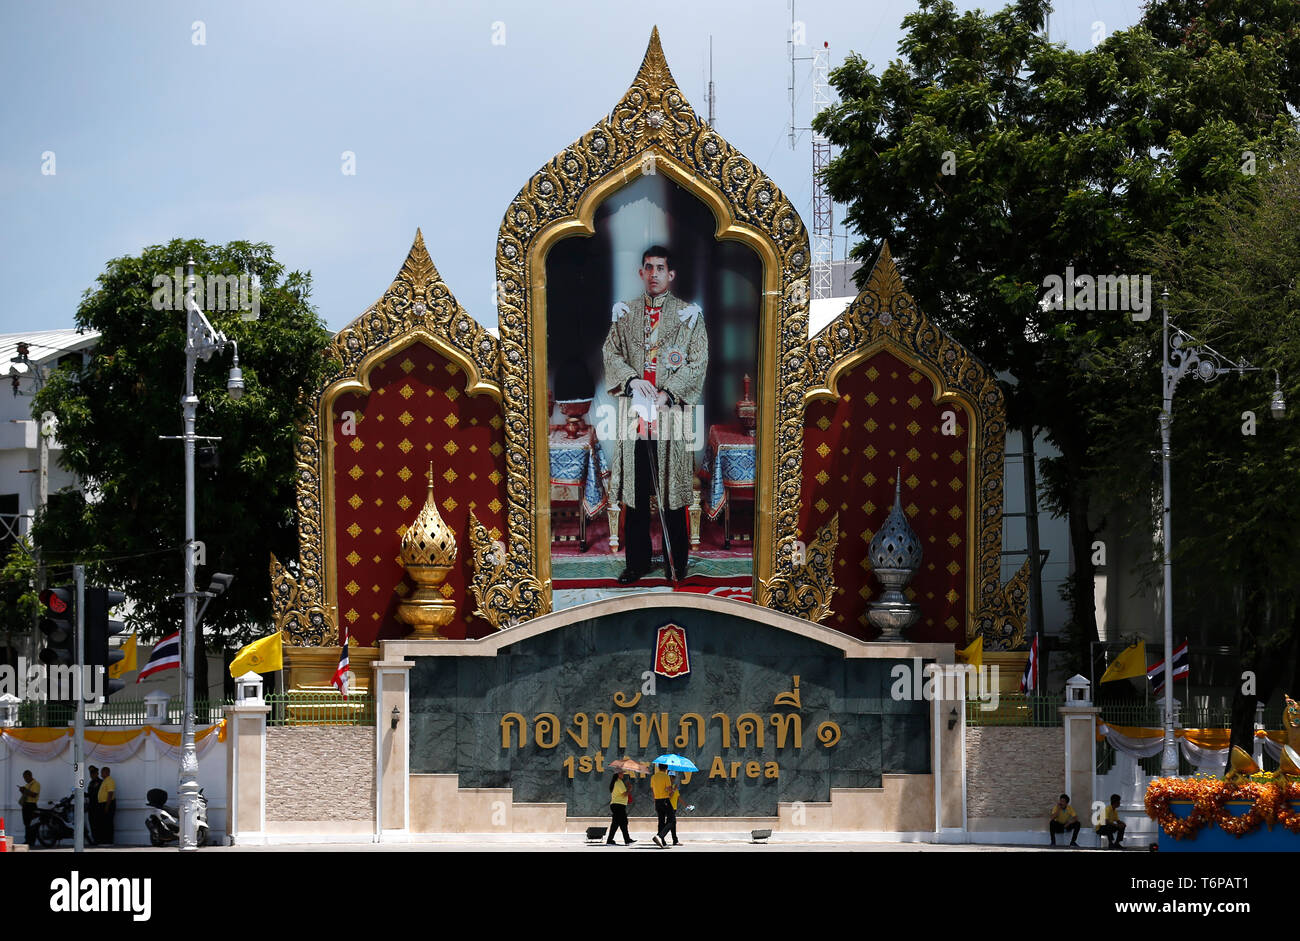 Bienfaiteurs vu en passant devant un portrait du roi de Thaïlande, Maha Vajiralongkorn Bodindradebayavarangkun (Rama X) avant le couronnement royal à Bangkok. Banque D'Images